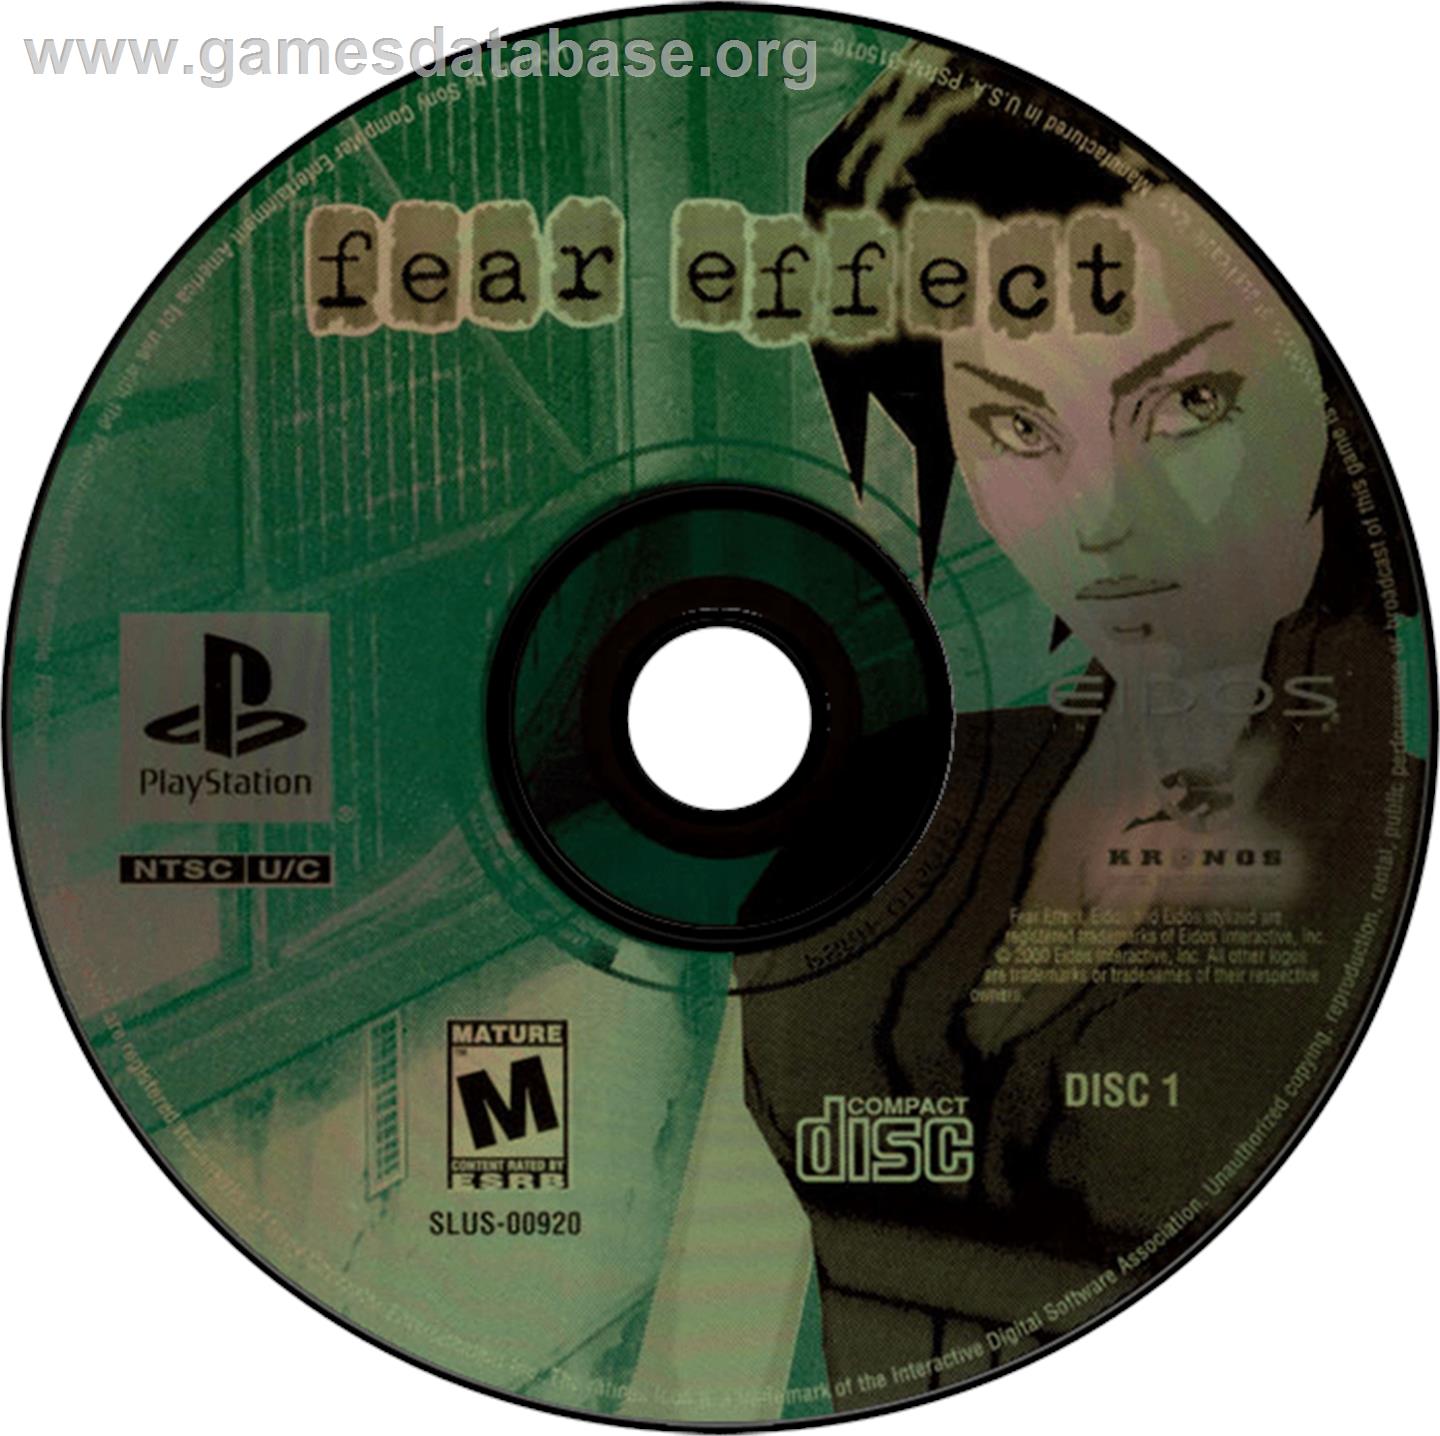 Fear Effect - Sony Playstation - Artwork - Disc